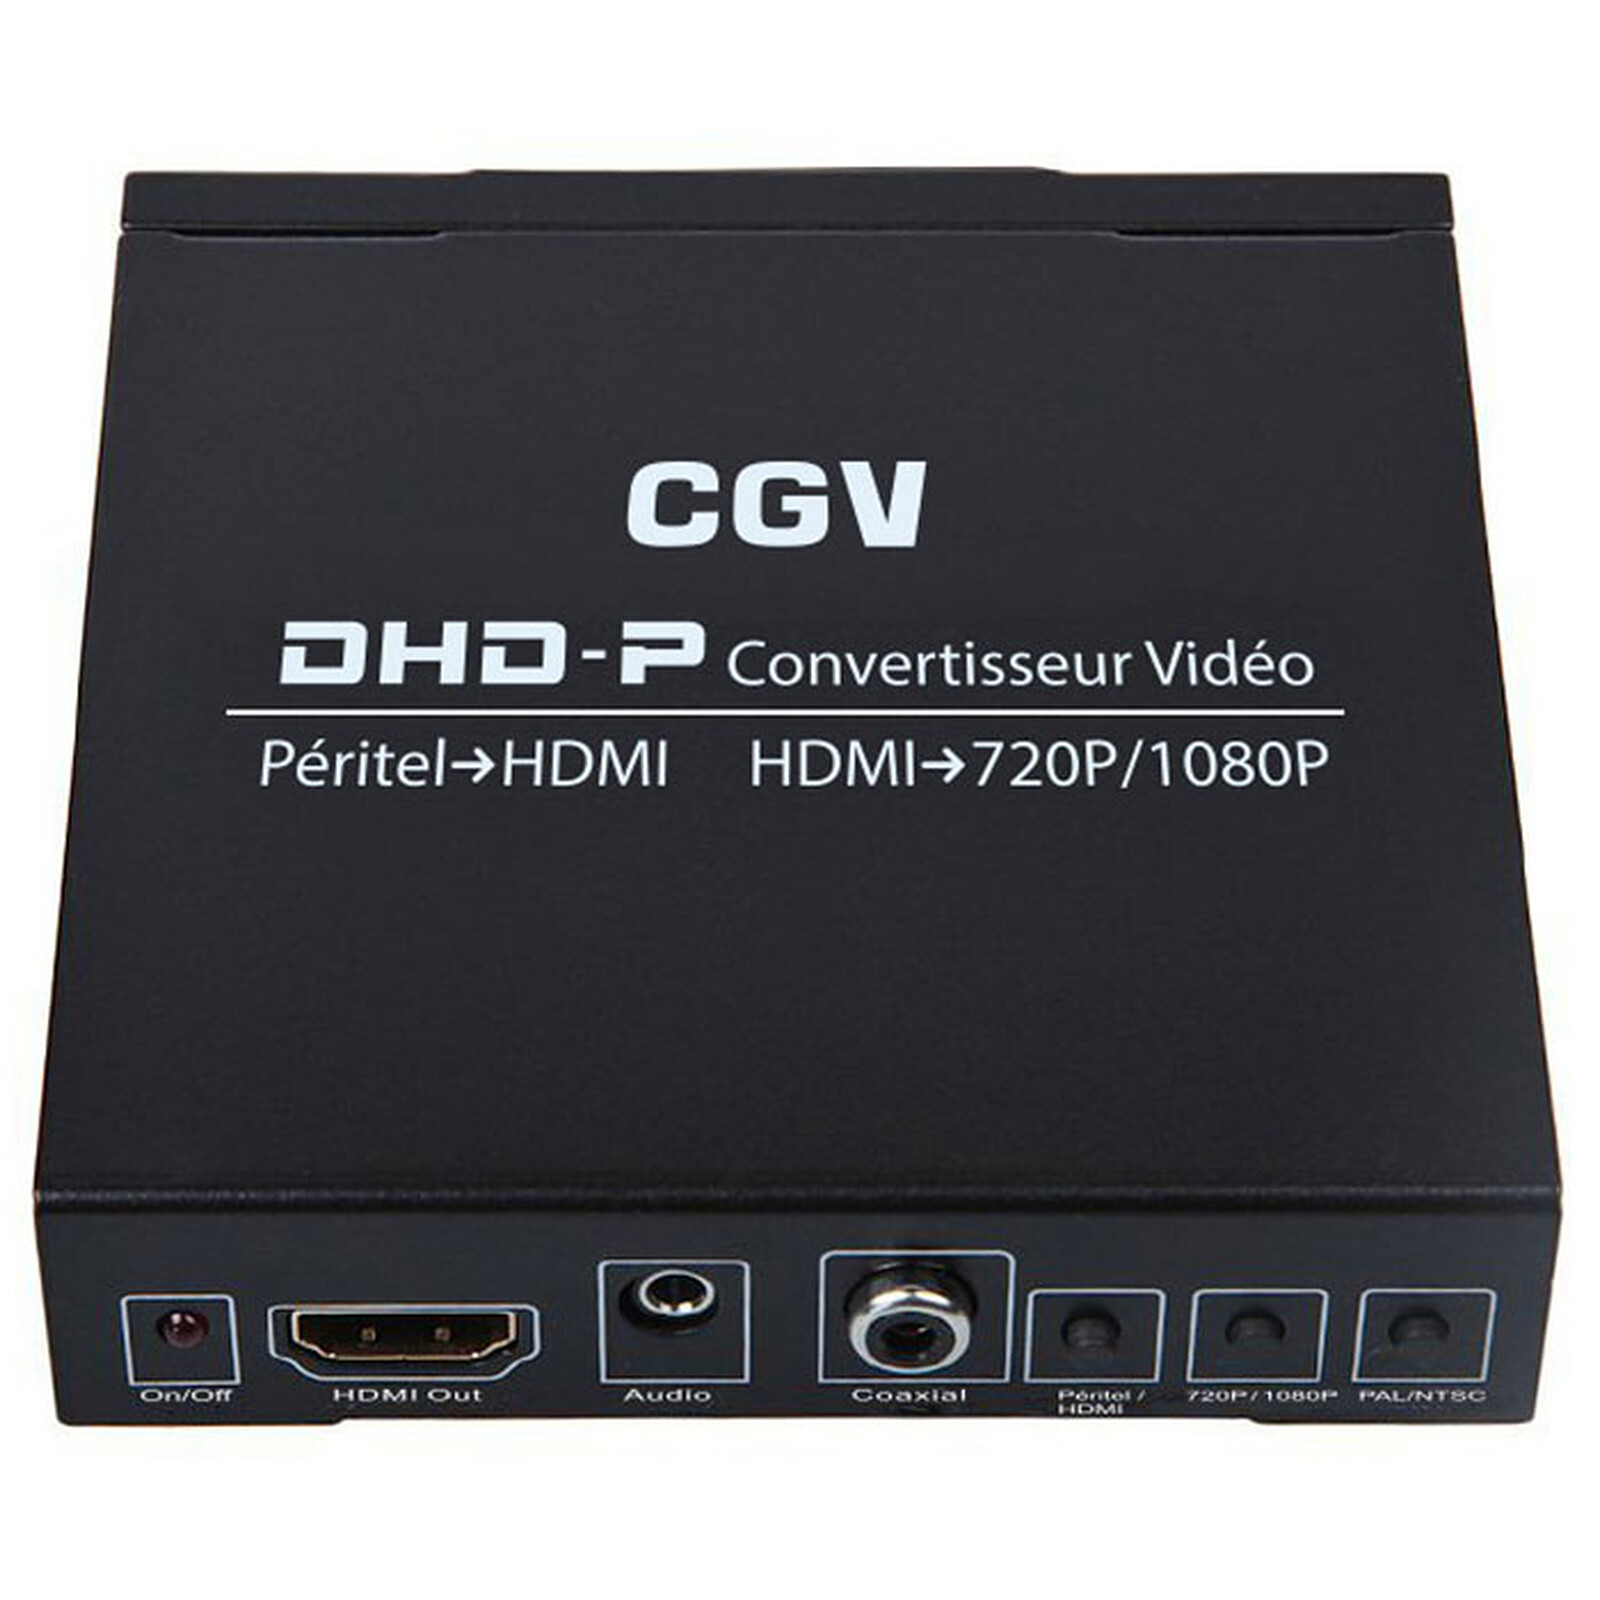 HDElite Convertisseur Péritel HDMI - Câble HDMI HDElite sur